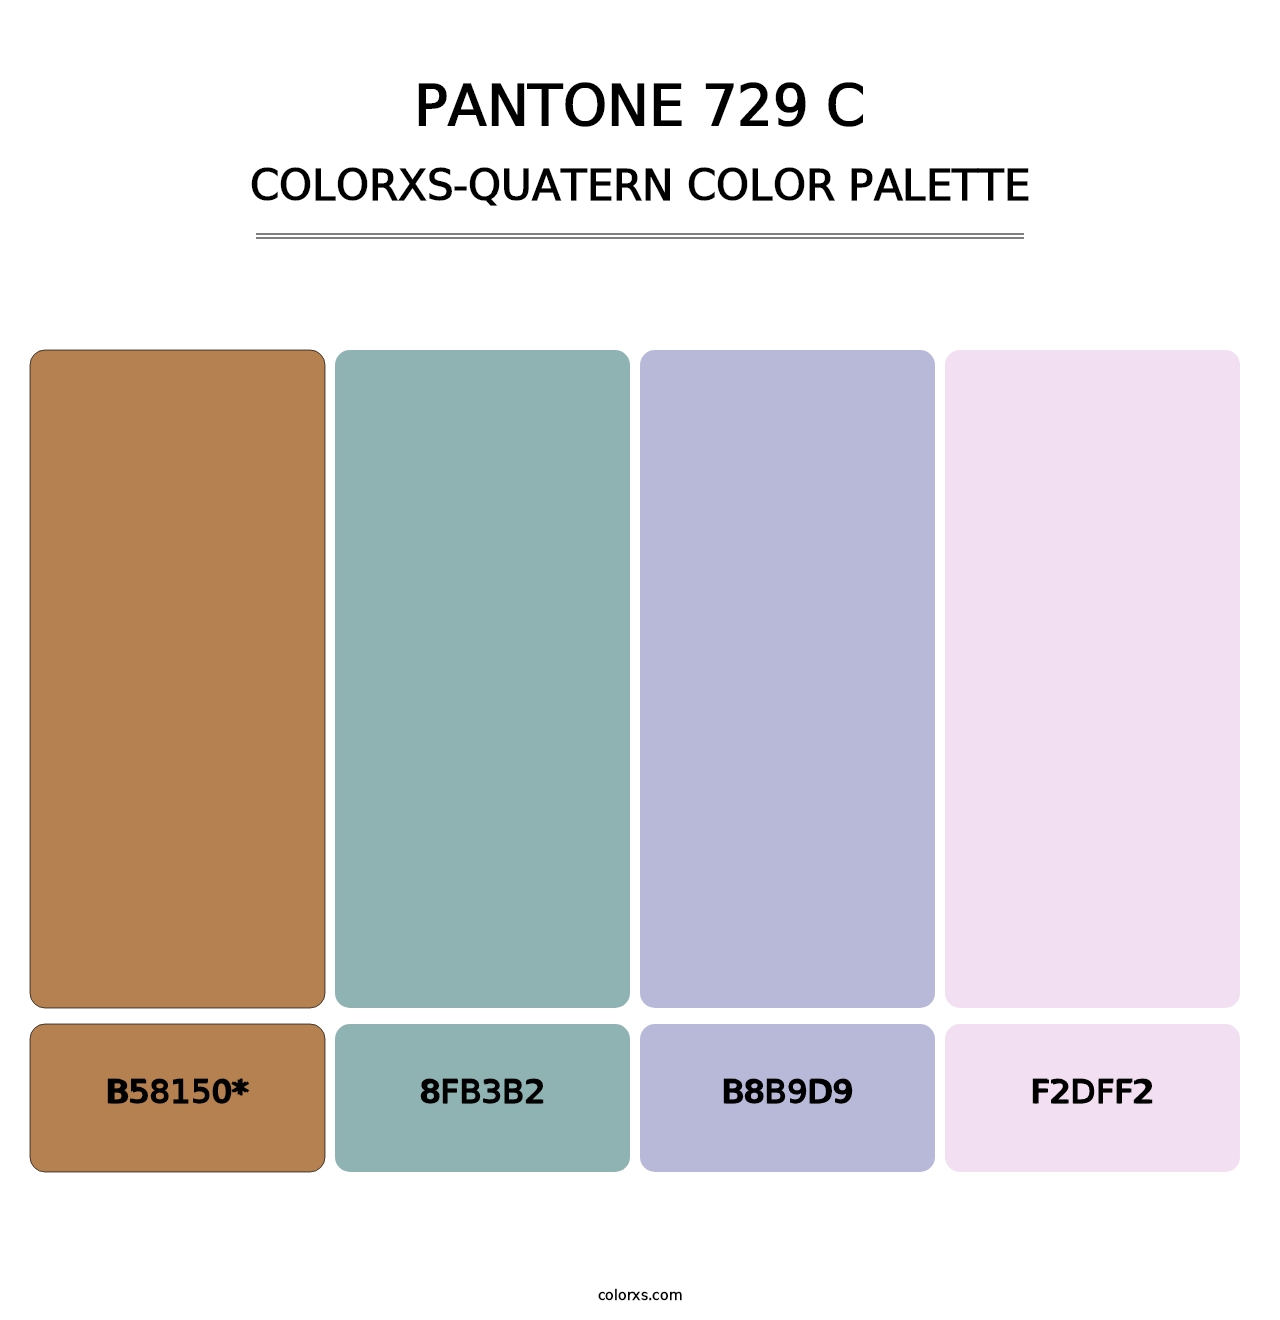 PANTONE 729 C - Colorxs Quatern Palette